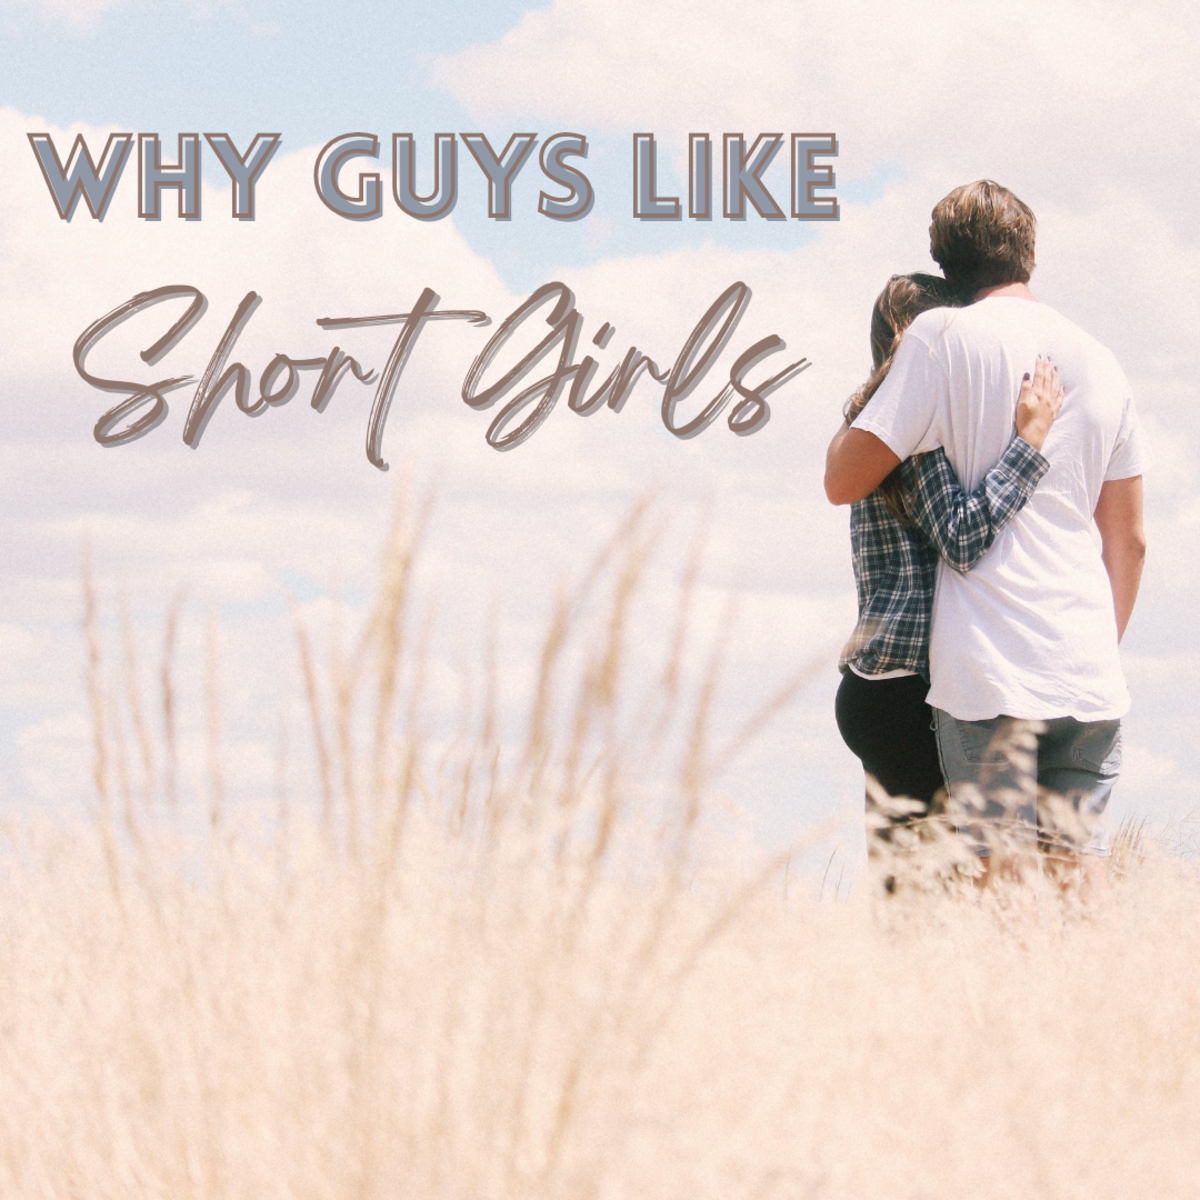 Why Do Guys Like Short Girls?